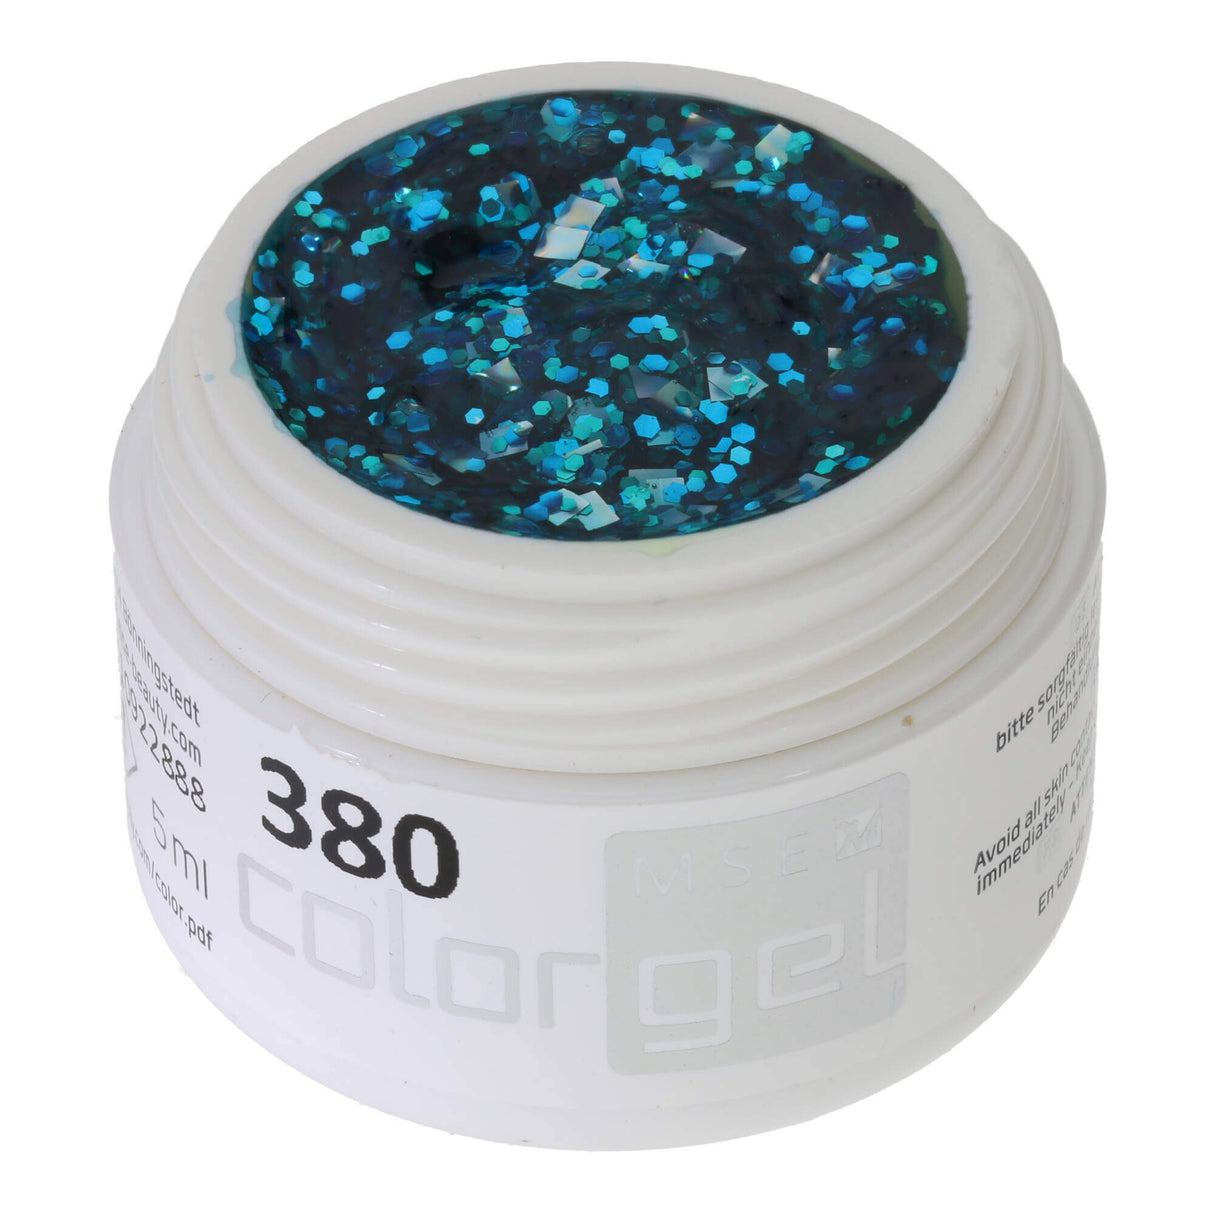 # 380 Premium-GLITTER Color Gel 5ml Gel lấp lánh màu bạc với điểm nhấn màu xanh ngọc